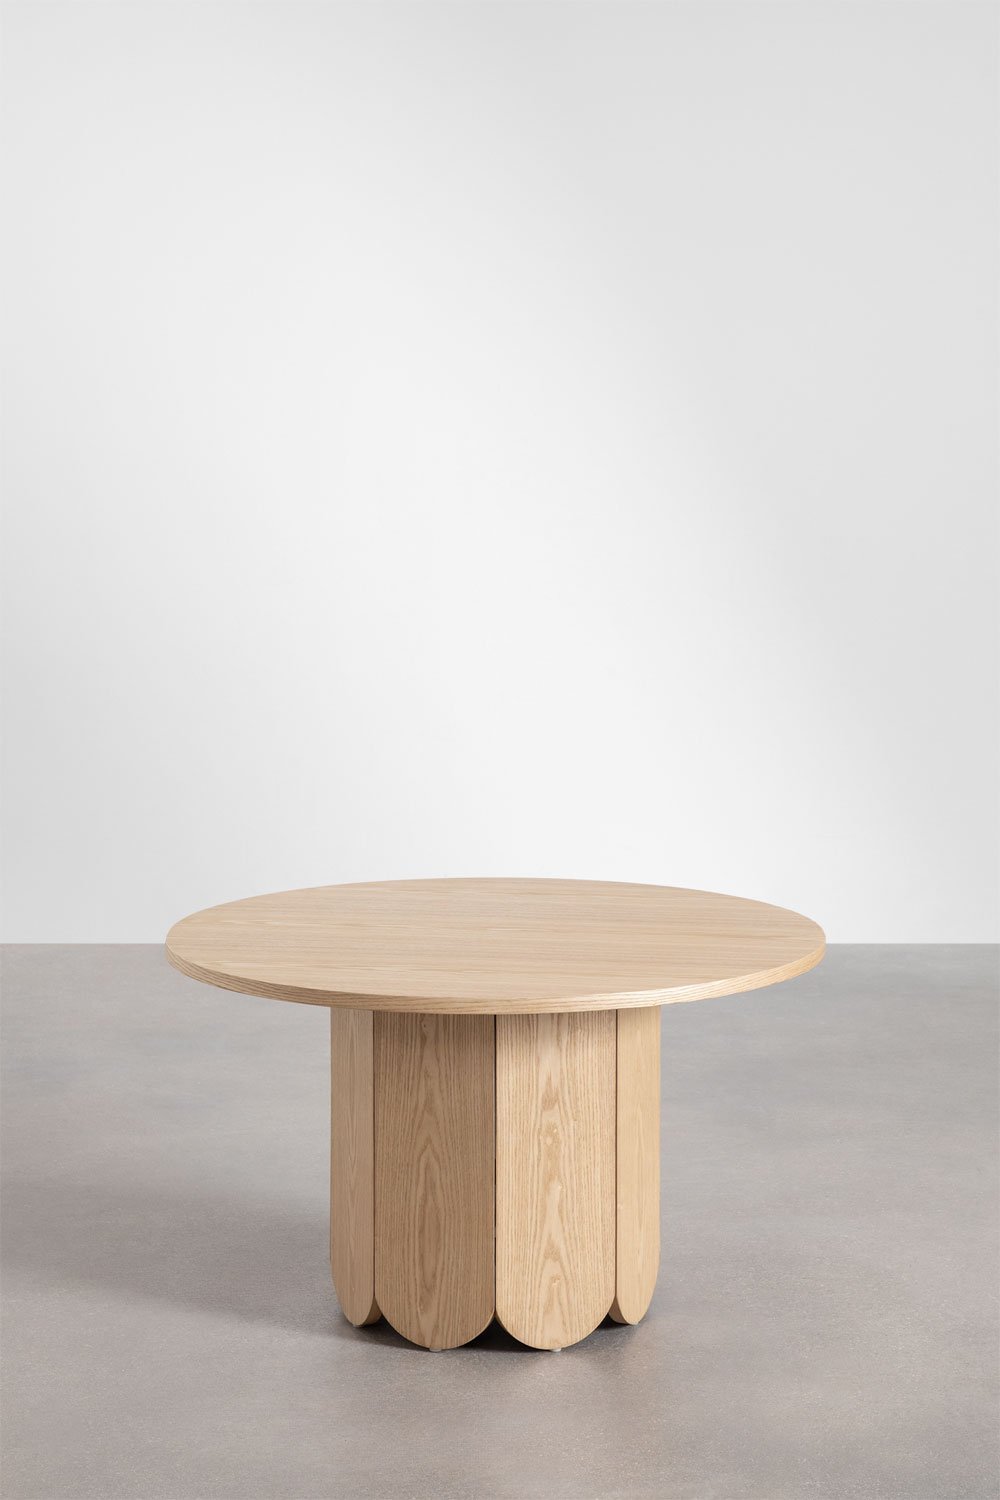 Ronde houten salontafel (Ø80 cm) Vinsey, galerij beeld 2